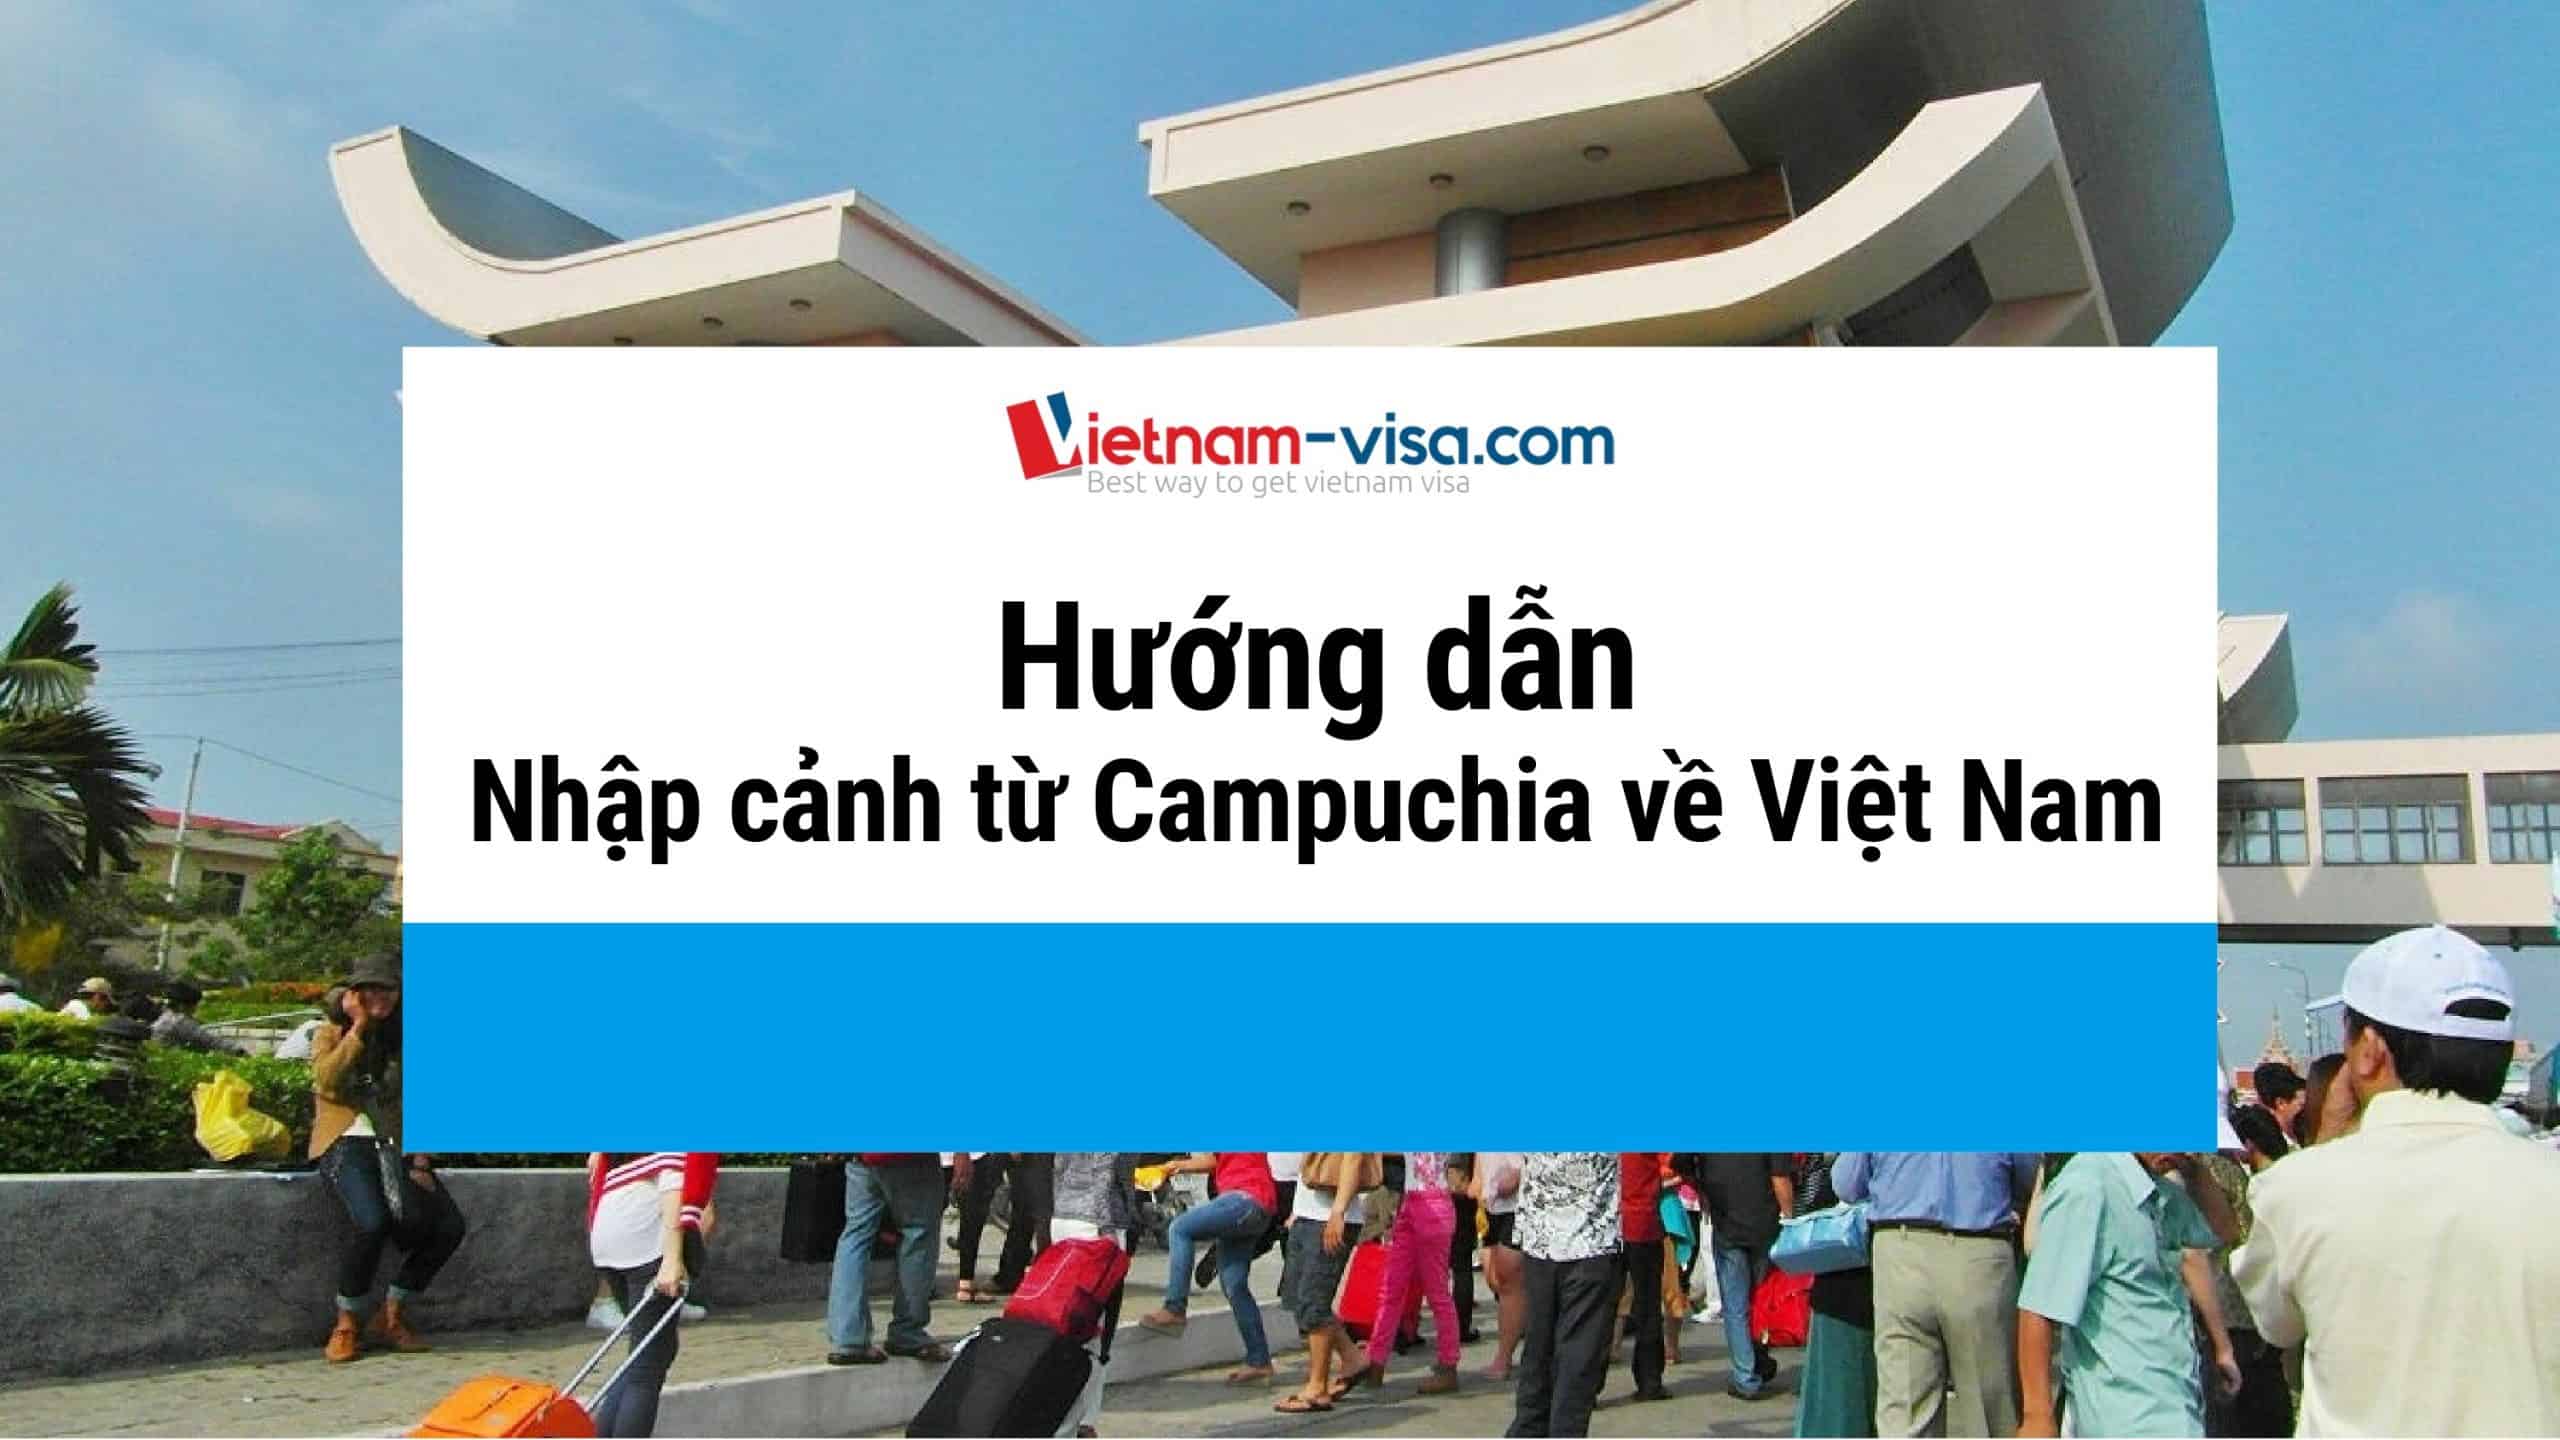 Hướng dẫn nhập cảnh từ Campuchia về Việt Nam mới nhất – Giá rẻ – Linh hoạt thời gian